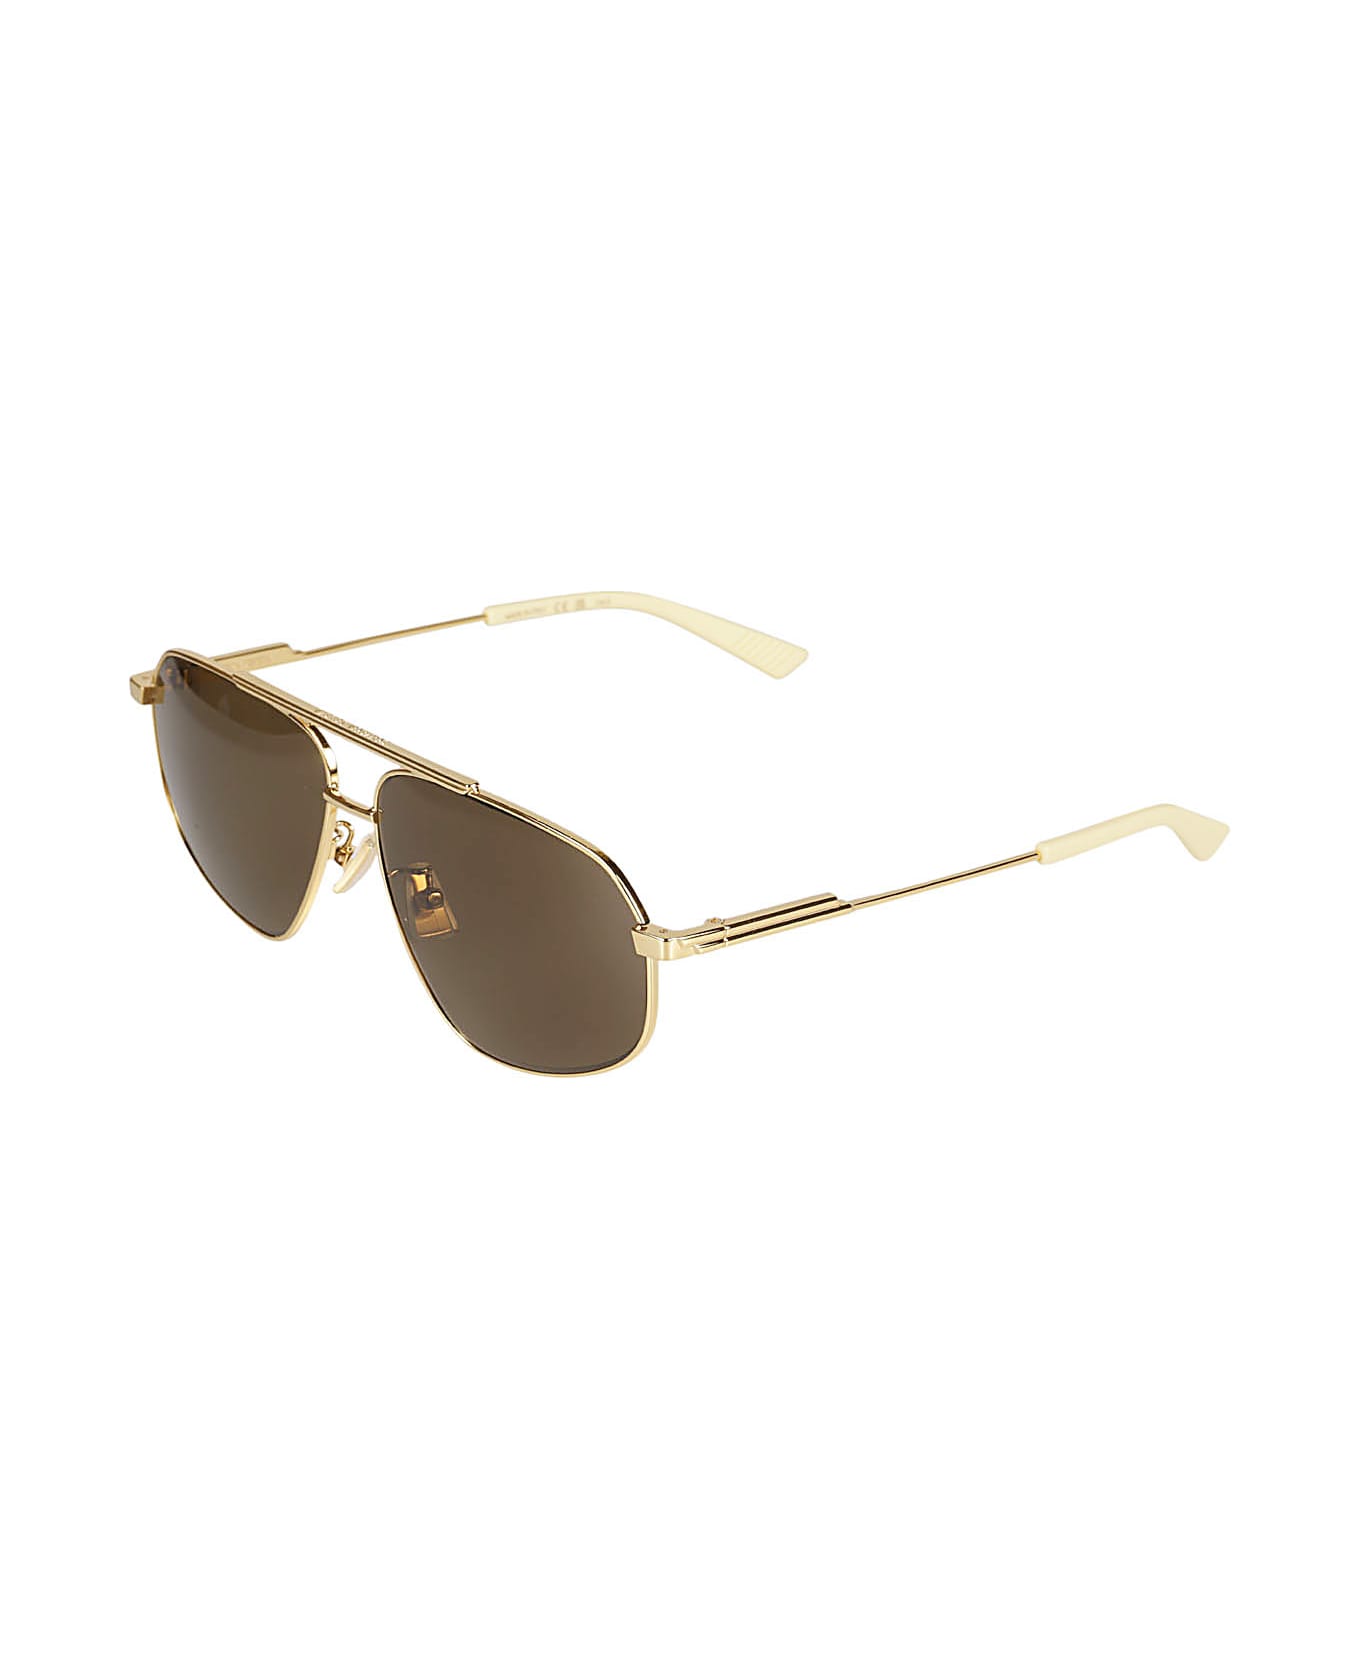 Bottega Veneta Eyewear Gold-tone Aviatore Style Sunglasses - Gold/Brown